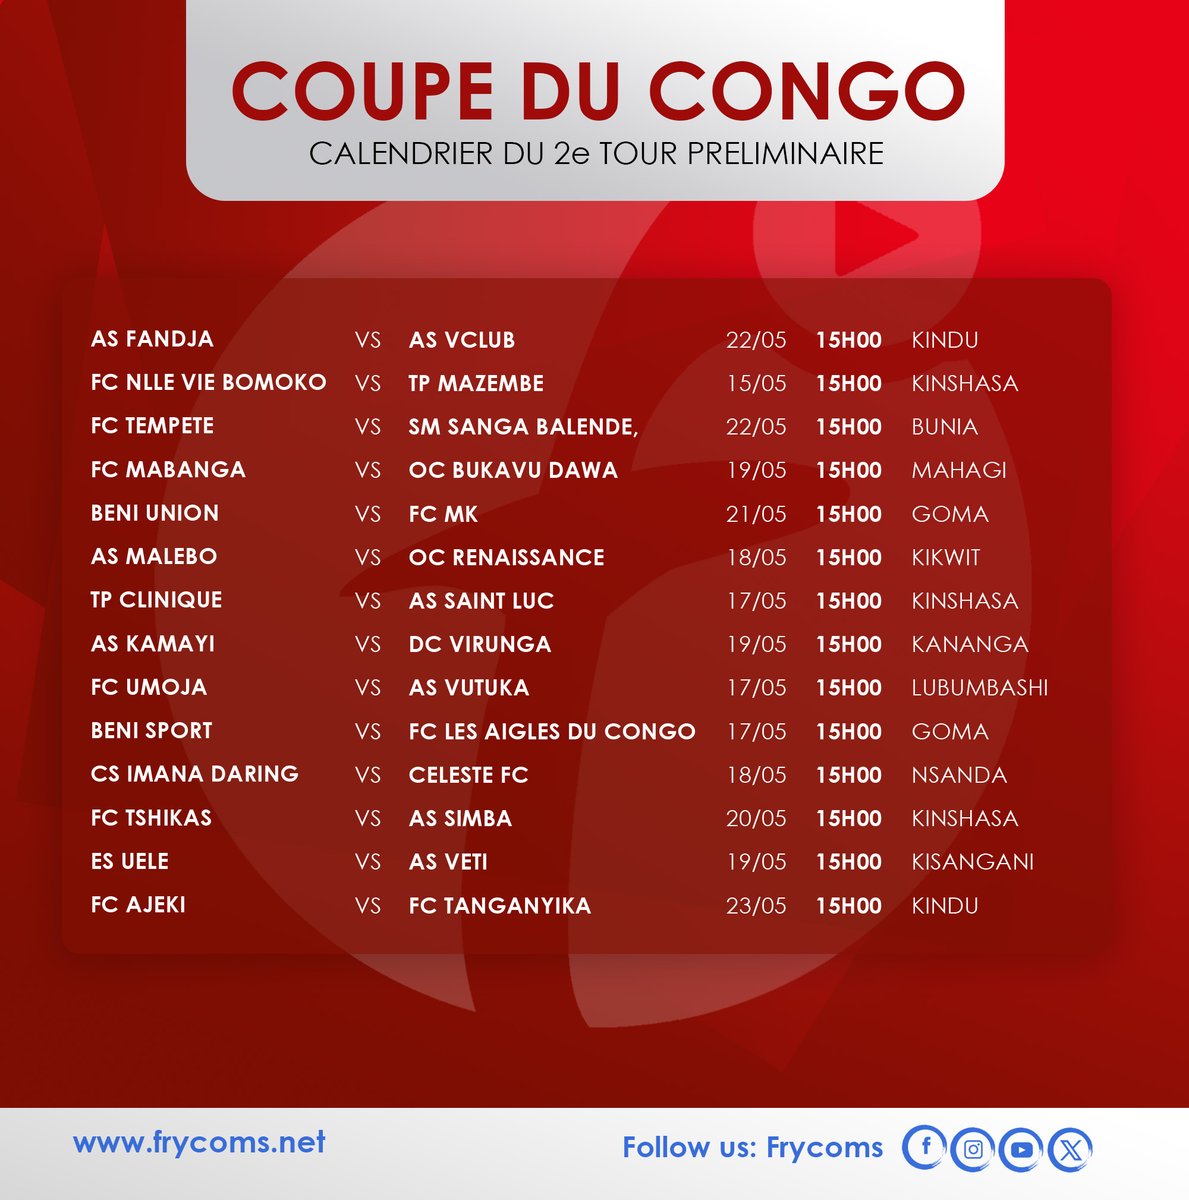 Coupe du Congo: le Calndrier
@FecofaRdc